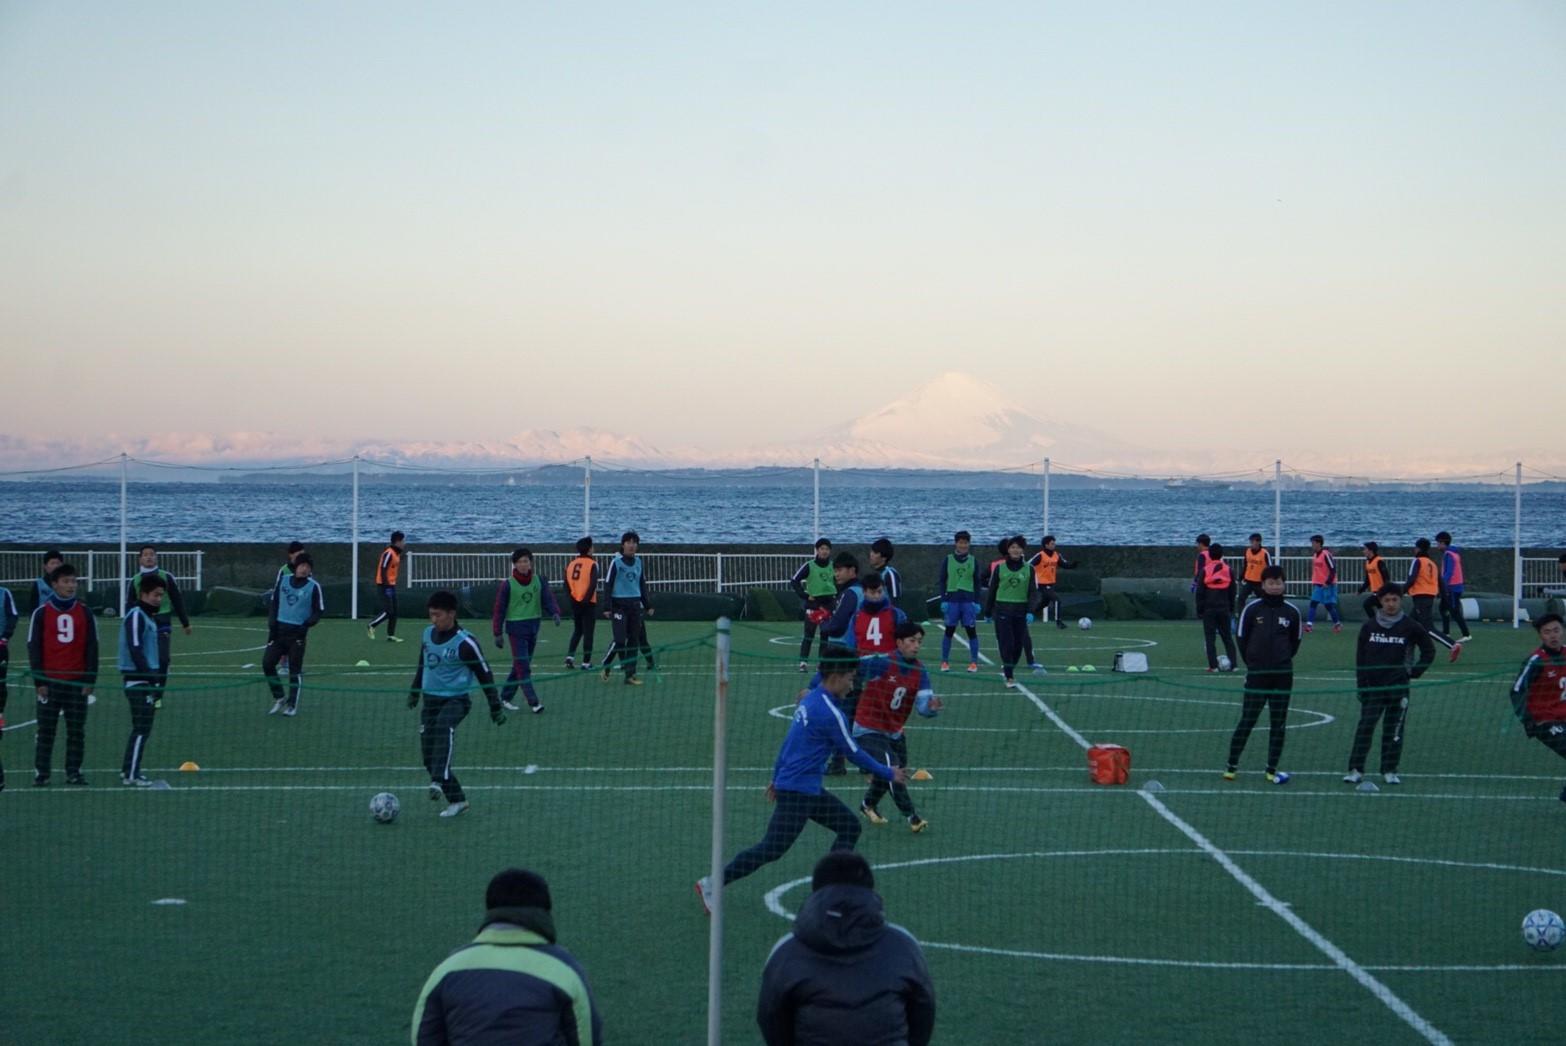 https://football.ku-sports.jp/blog/photoreport/20190220192239.jpg